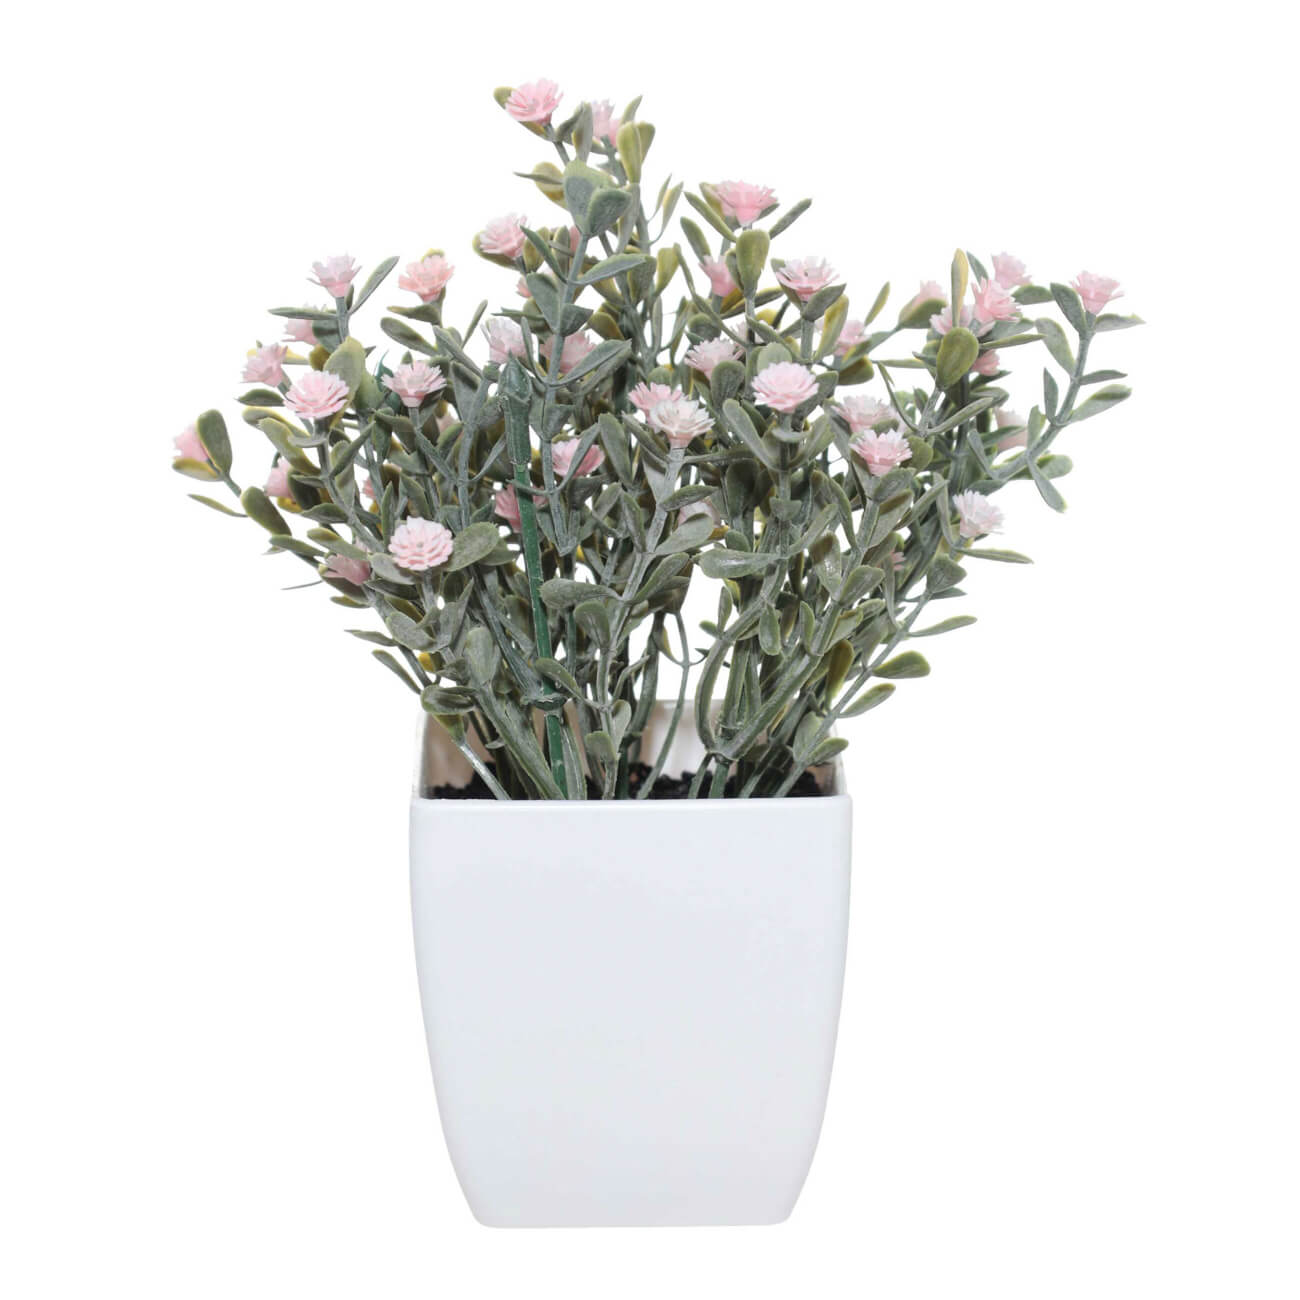 Растение искусственное, 17 см, в горшке, пластик/металл, Розовые цветы, Pot garden